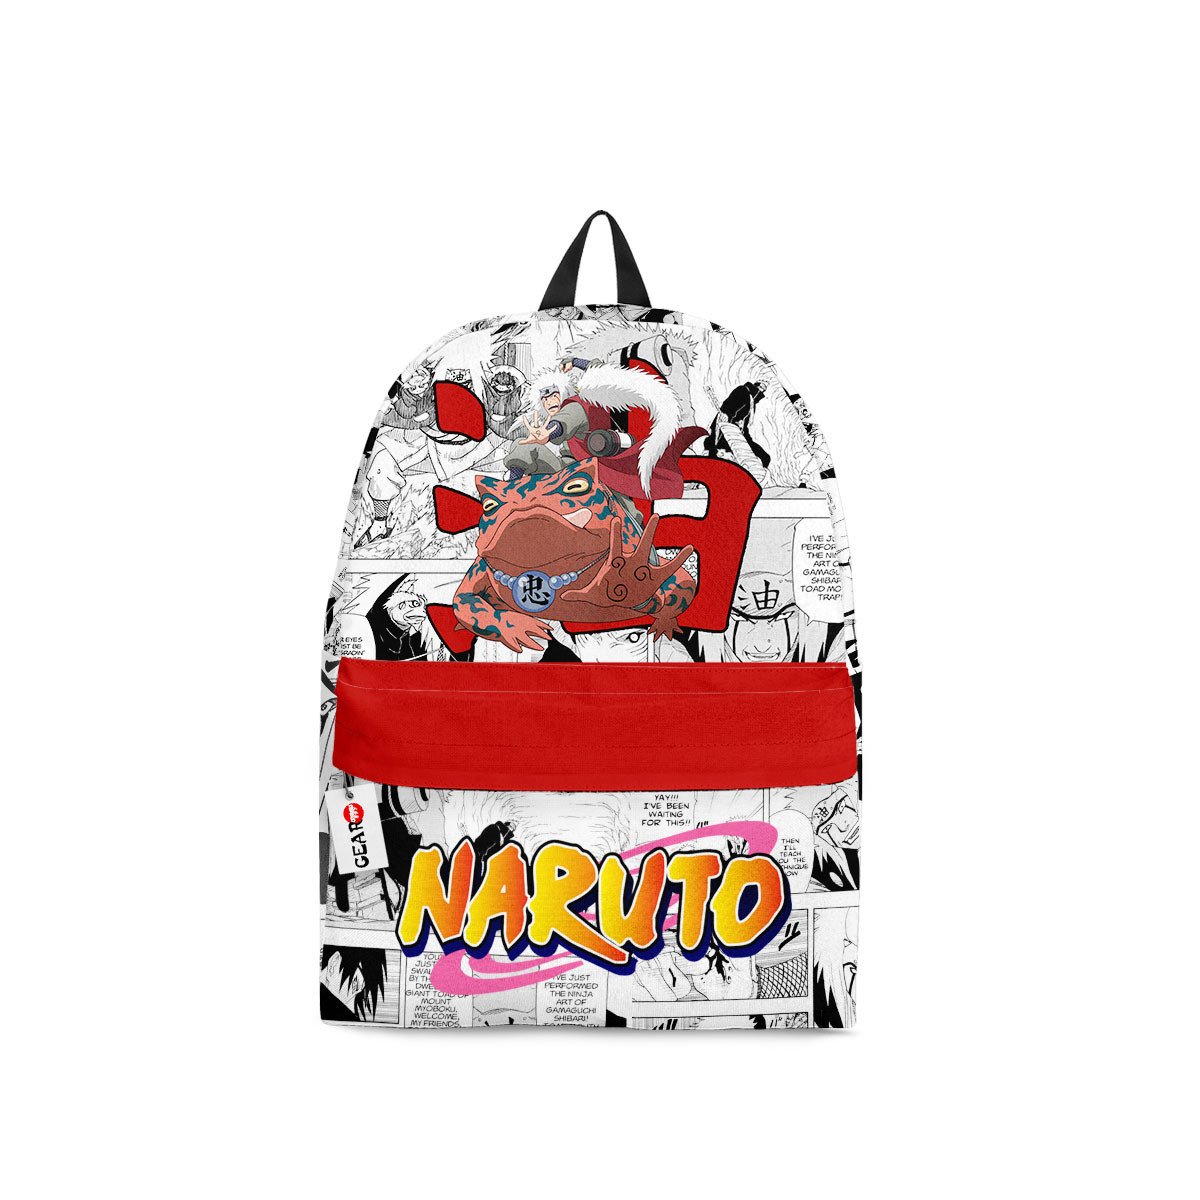 BEST Jiraiya Naruto Anime Manga Style Printed 3D Leisure Backpack